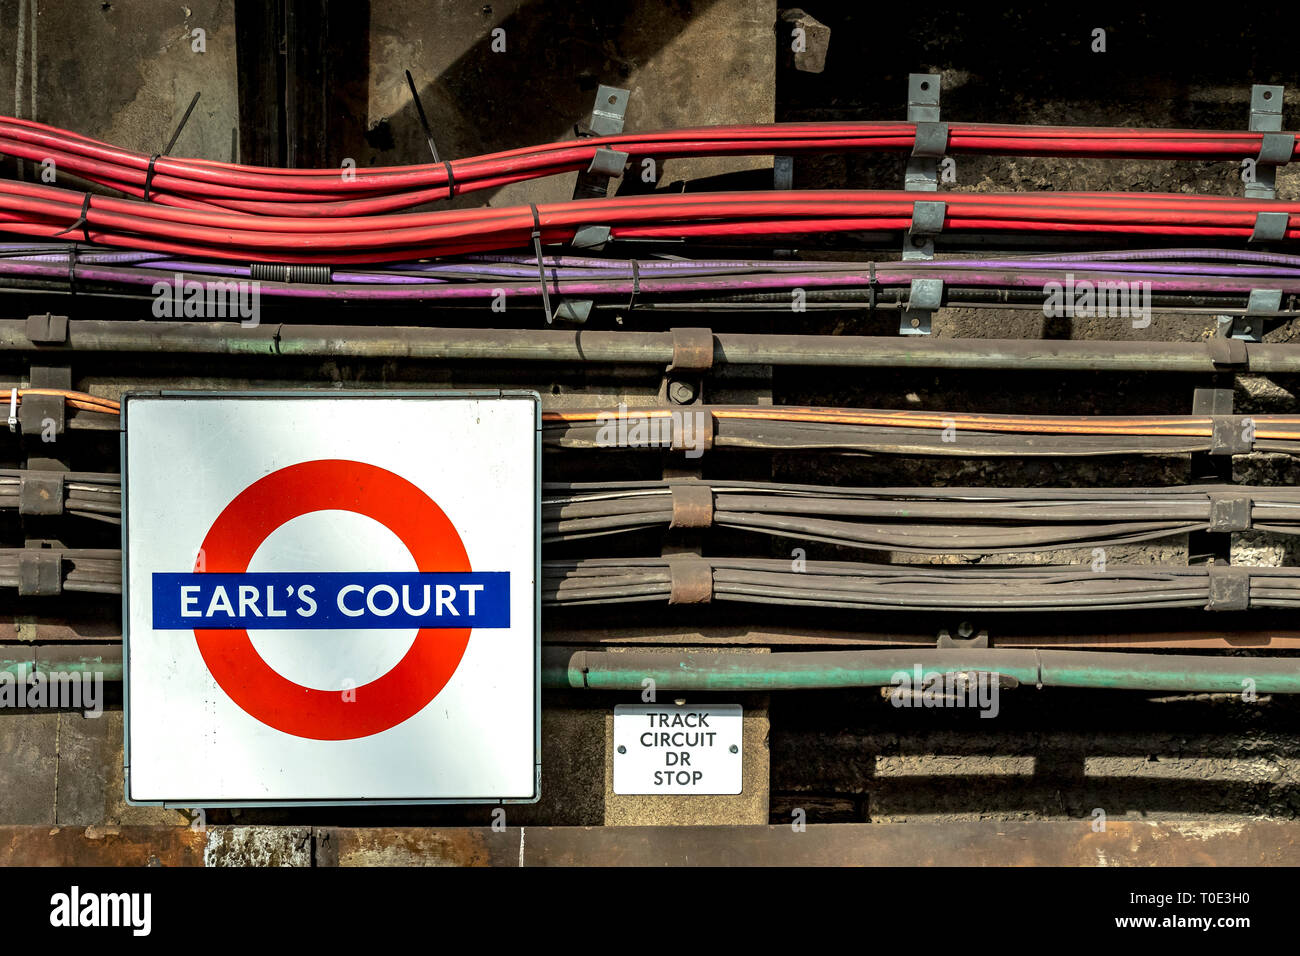 Câbles électriques parallèles et câblage le long du mur à la station de métro Earl's court, Londres, Royaume-Uni Banque D'Images